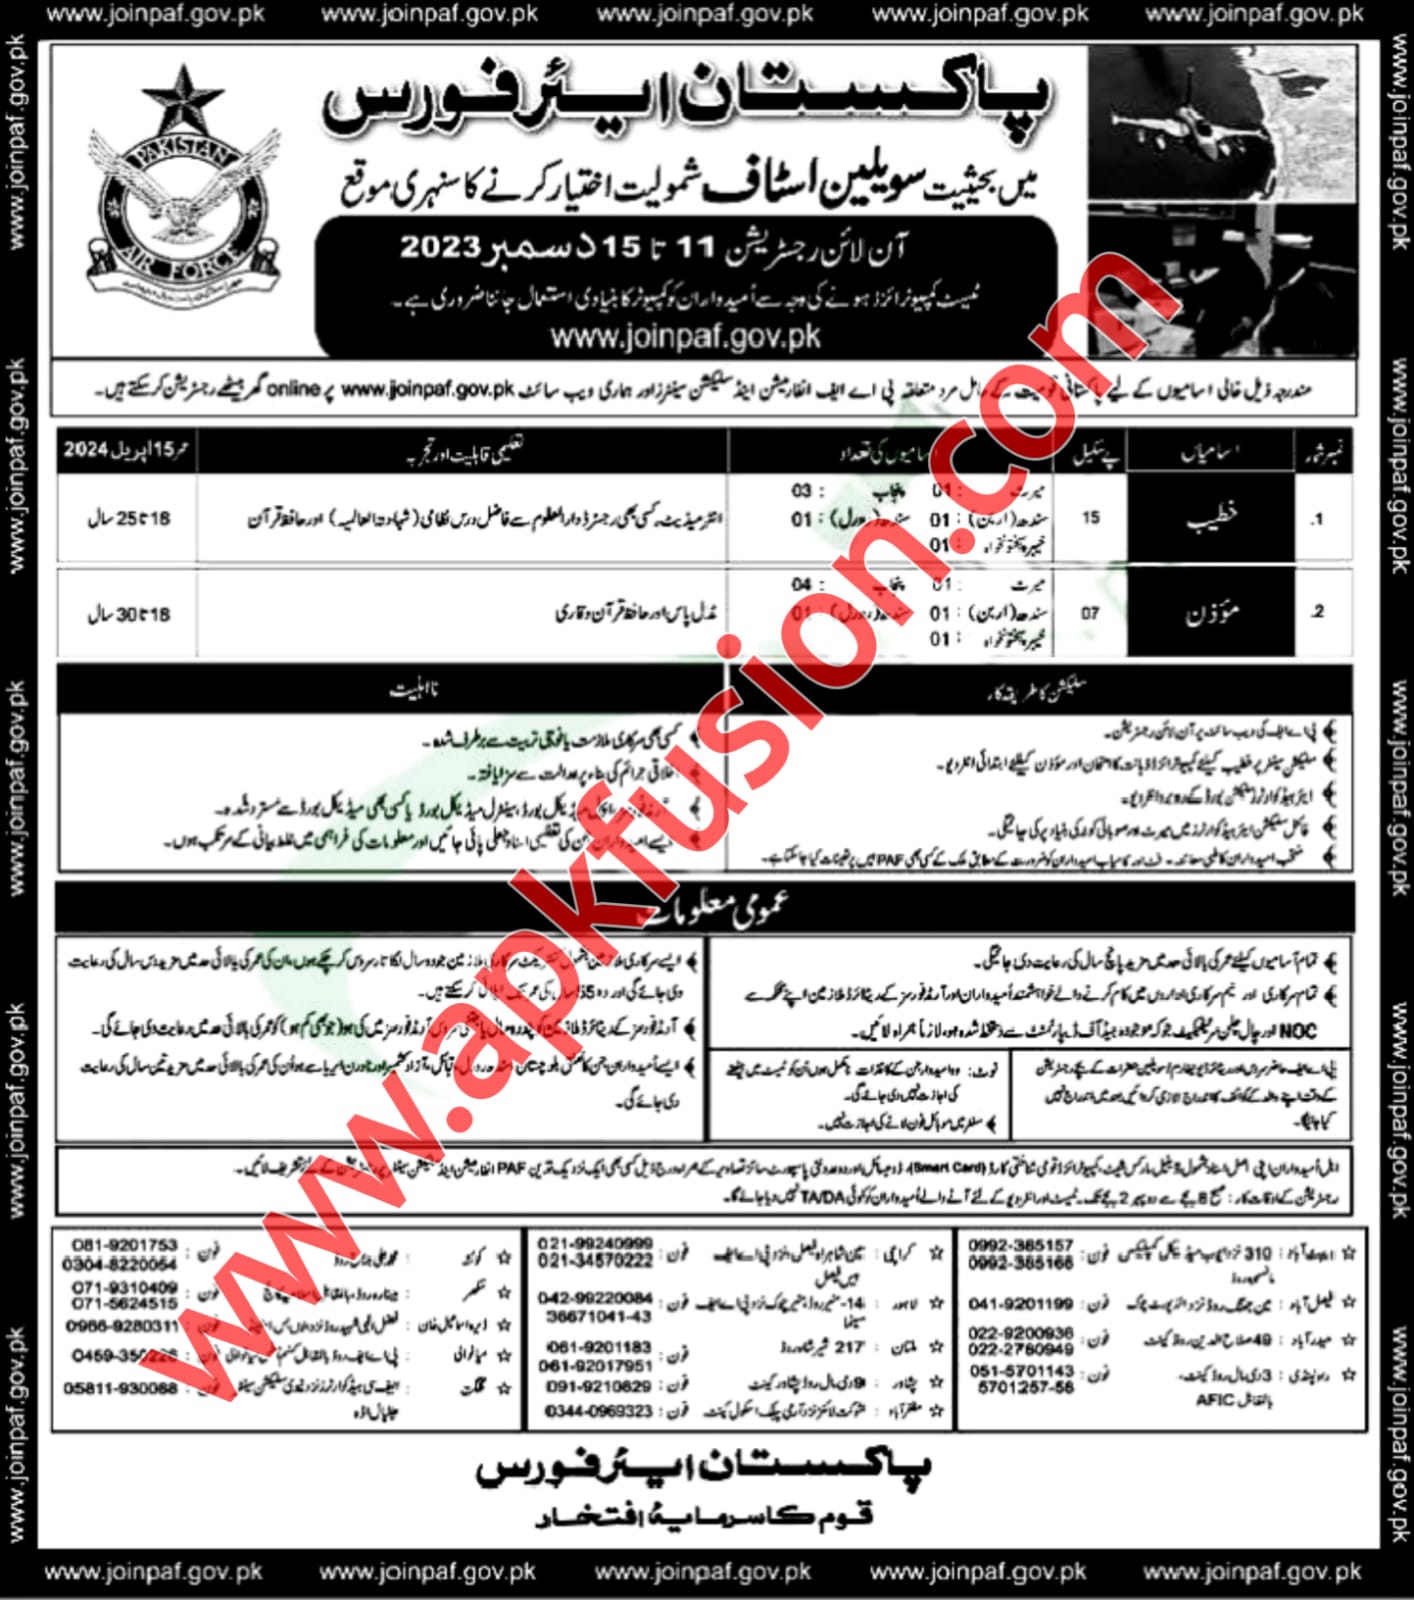 PAF Civilian Jobs 2023 Apply online - www.joinpaf.gov.pk 2023